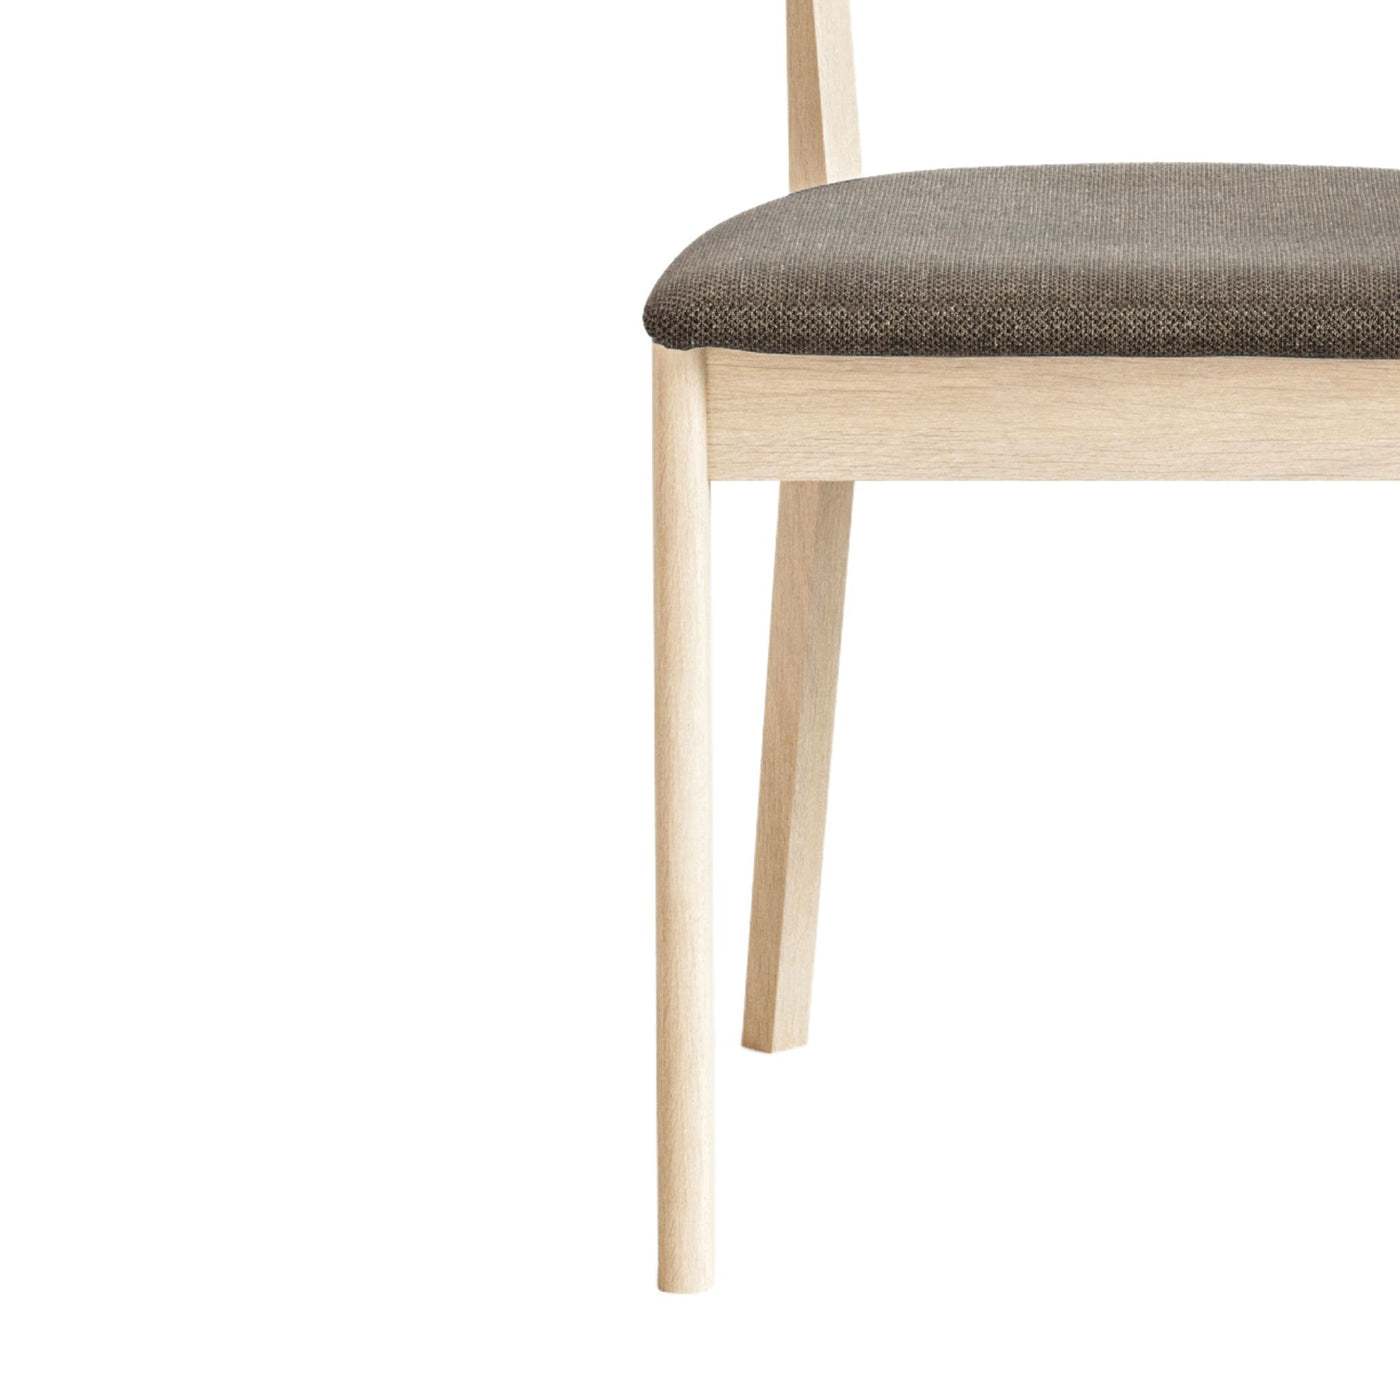 Nærbillede af spisebordsstol SM 52 fra Skovby i hvidolieret eg med brunt sæde.